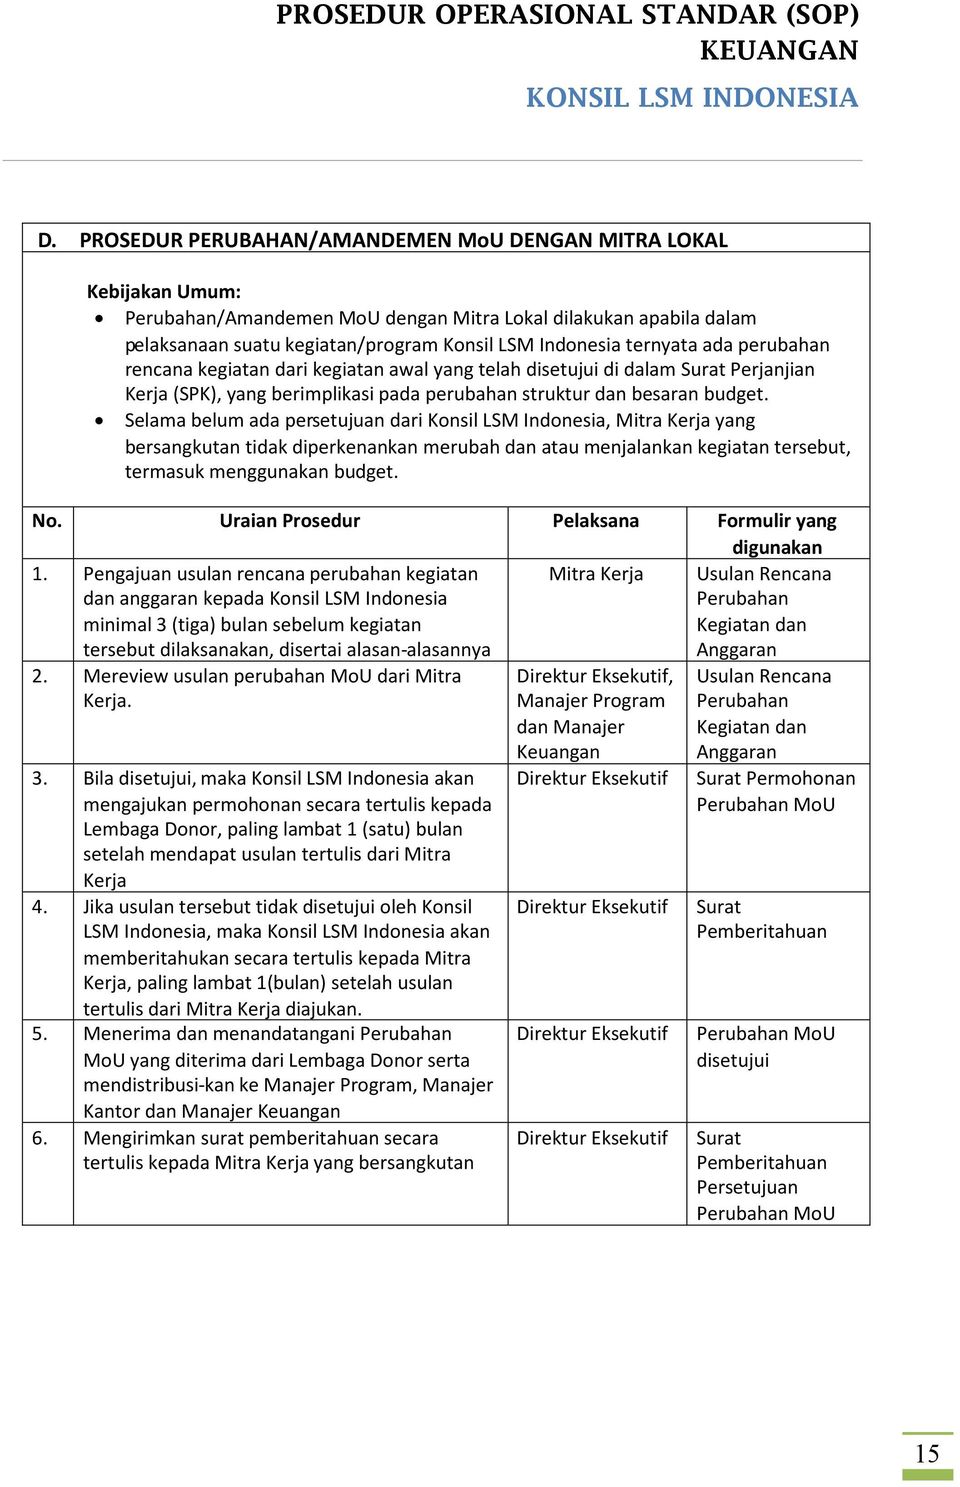 Selama belum ada persetujuan dari Konsil LSM Indonesia, Mitra Kerja yang bersangkutan tidak diperkenankan merubah dan atau menjalankan kegiatan tersebut, termasuk menggunakan budget. No.